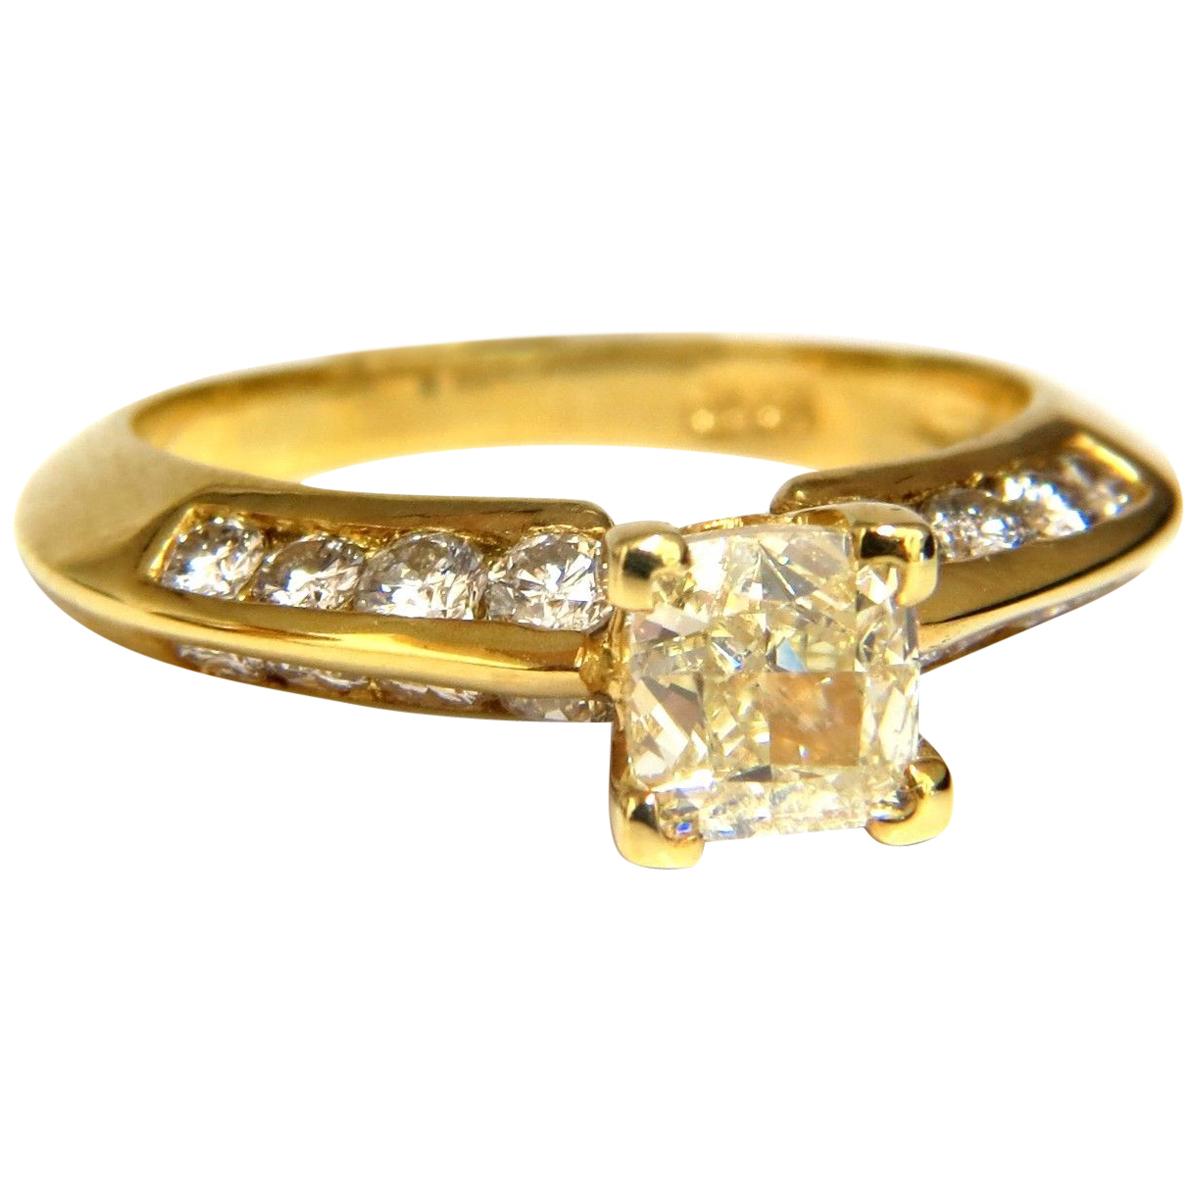 Bague en or 18 carats avec diamant jaune fantaisie taille coussin de 2,51 carats certifié par le GIA